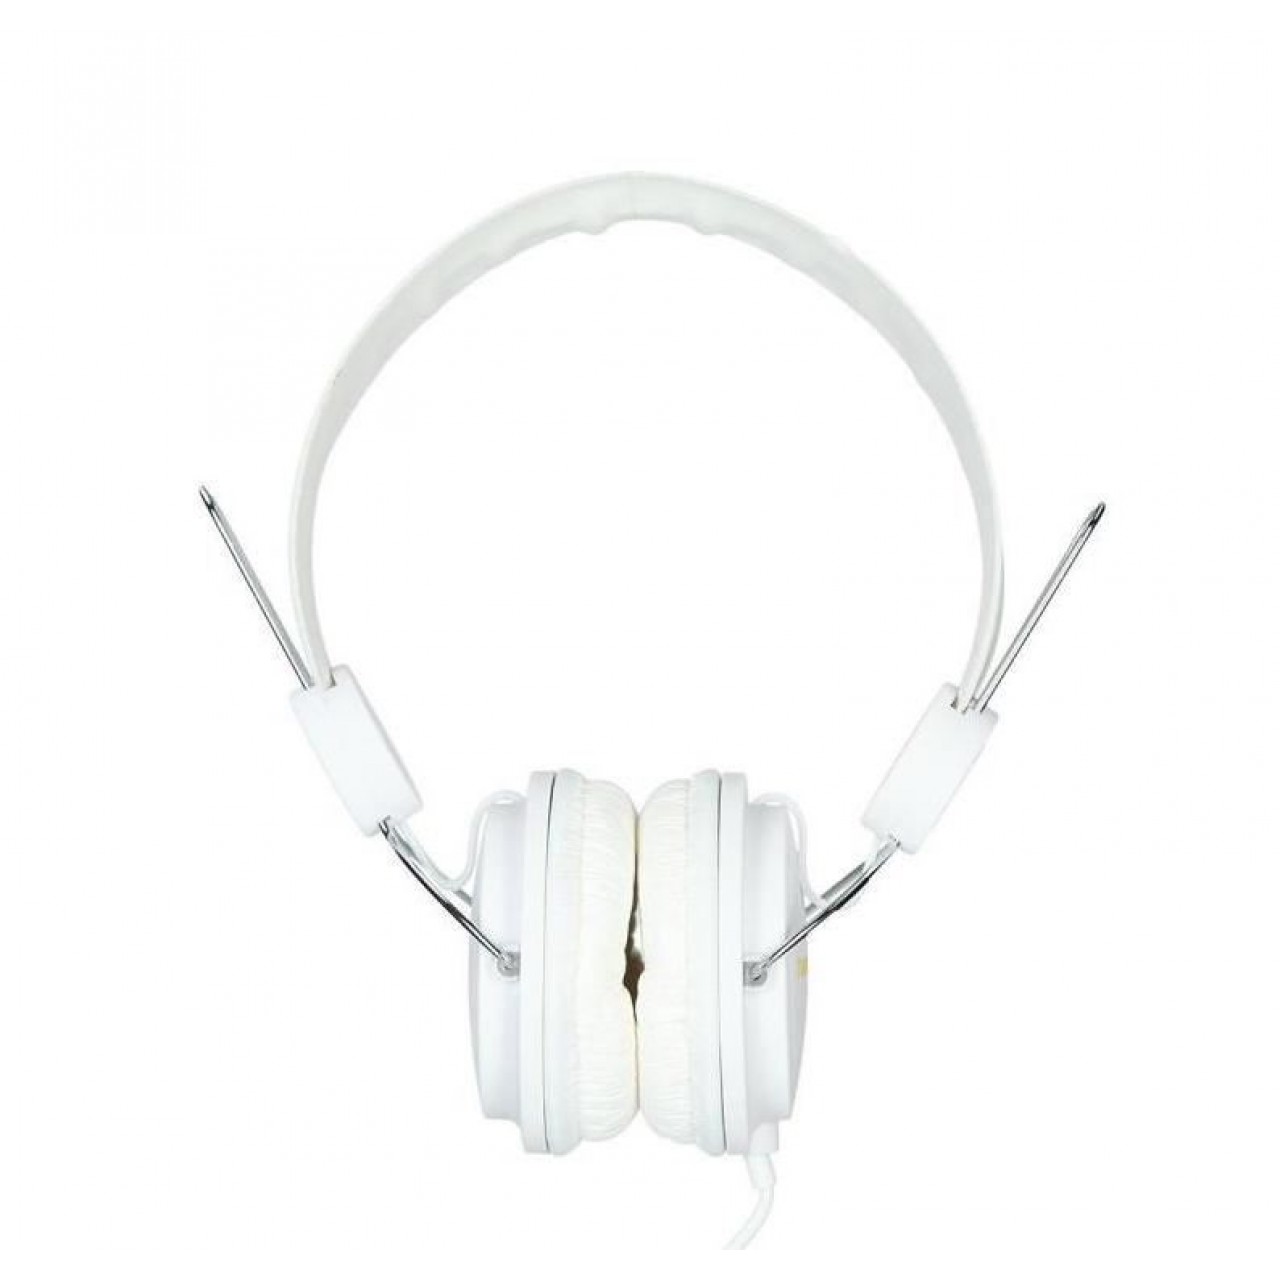 Καλωδιακά Ακουστικά - Havit H2198d (WHITE)